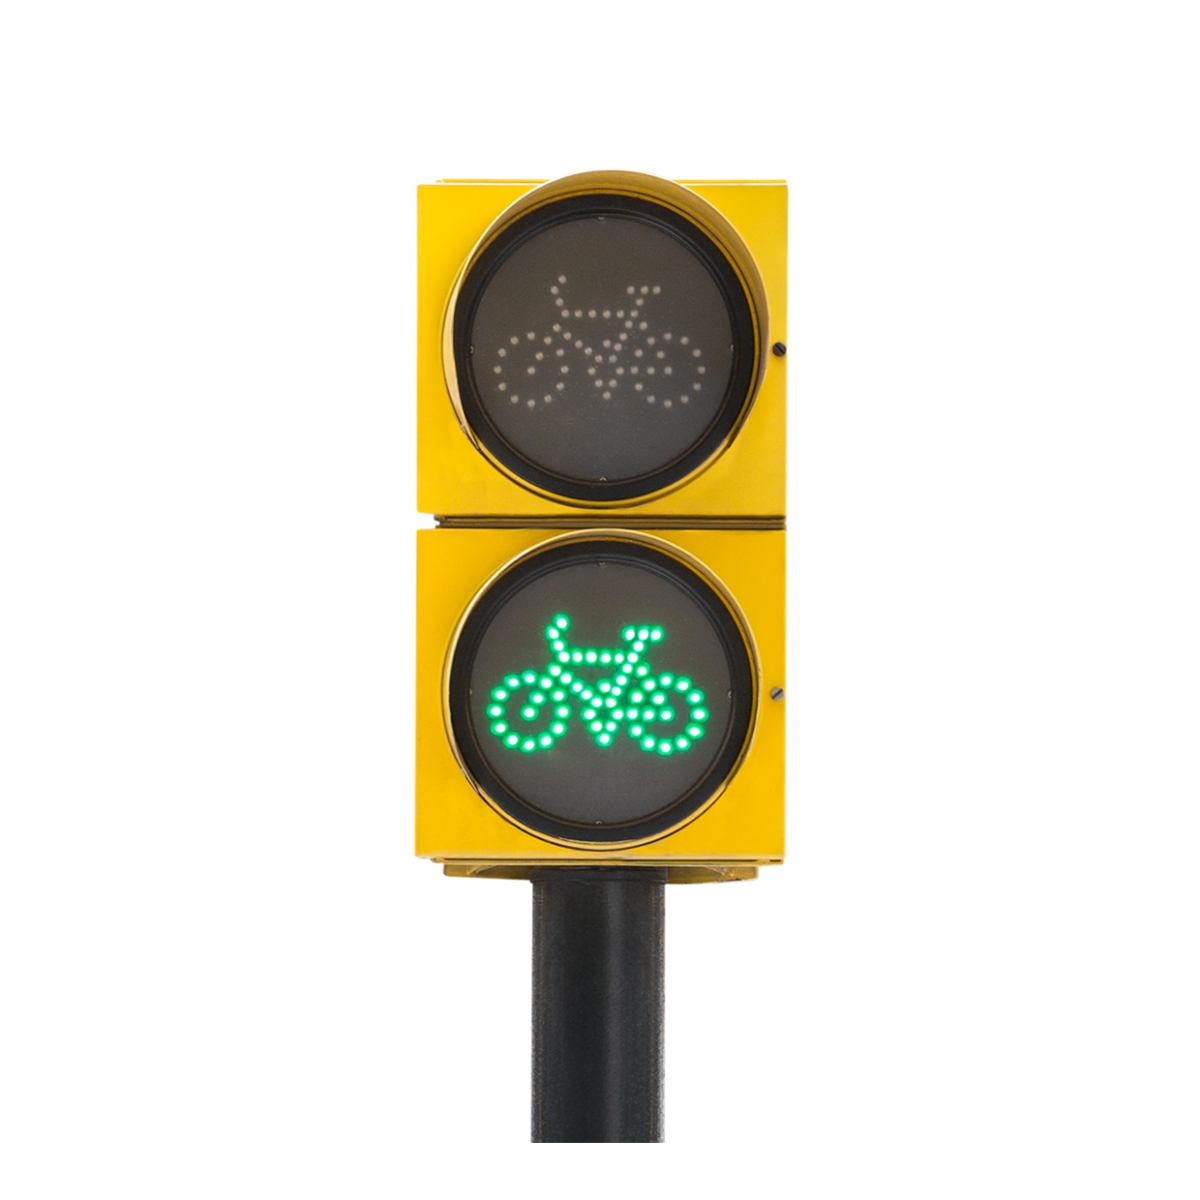 Imagen en la que se ve un semáforo de bicicletas